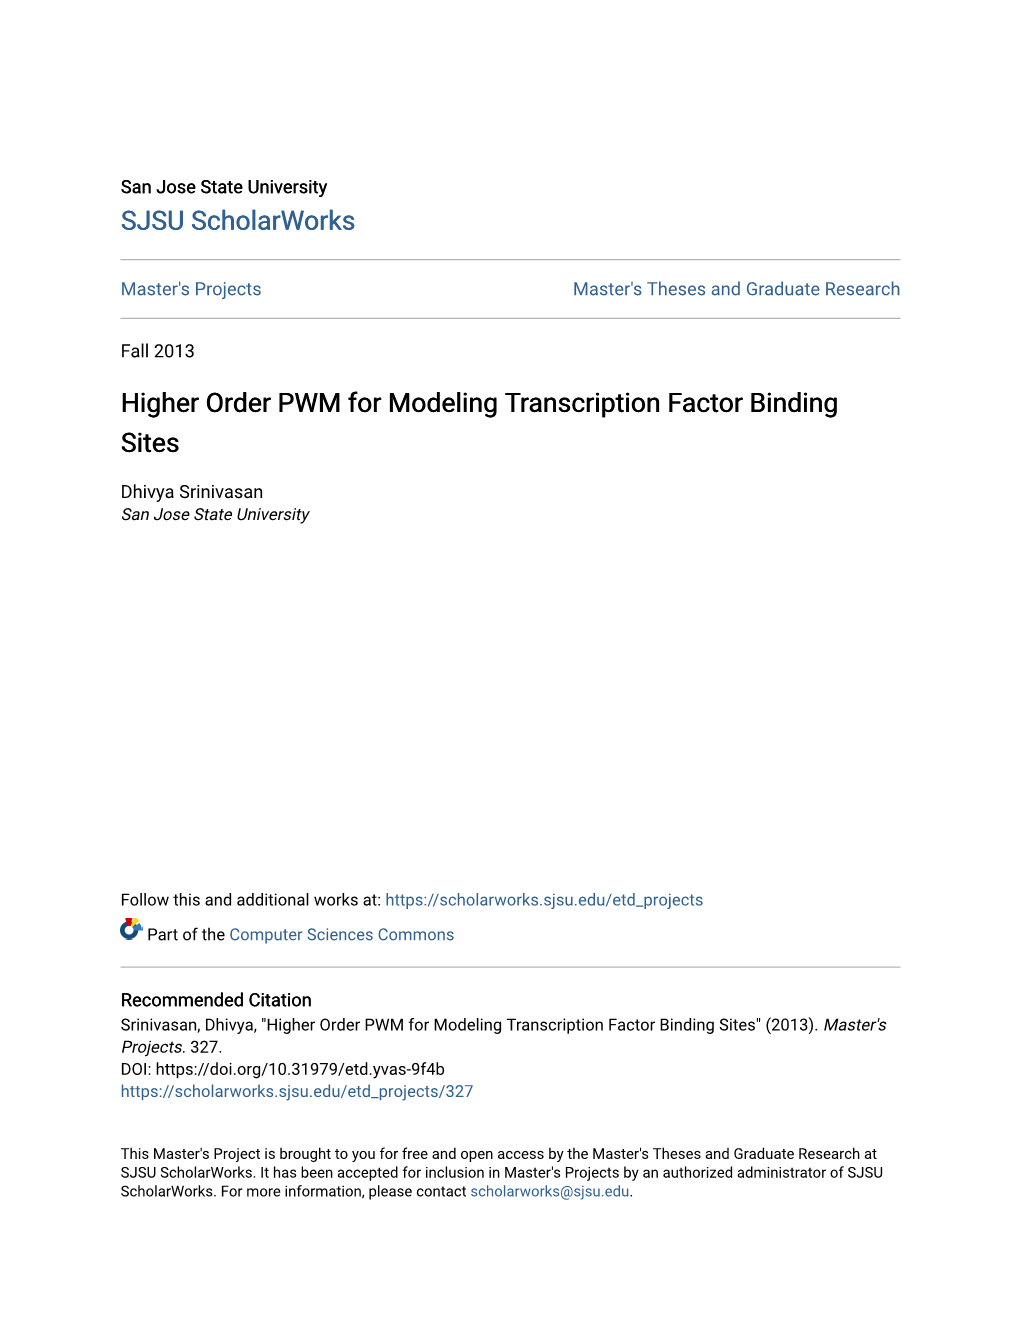 Higher Order PWM for Modeling Transcription Factor Binding Sites